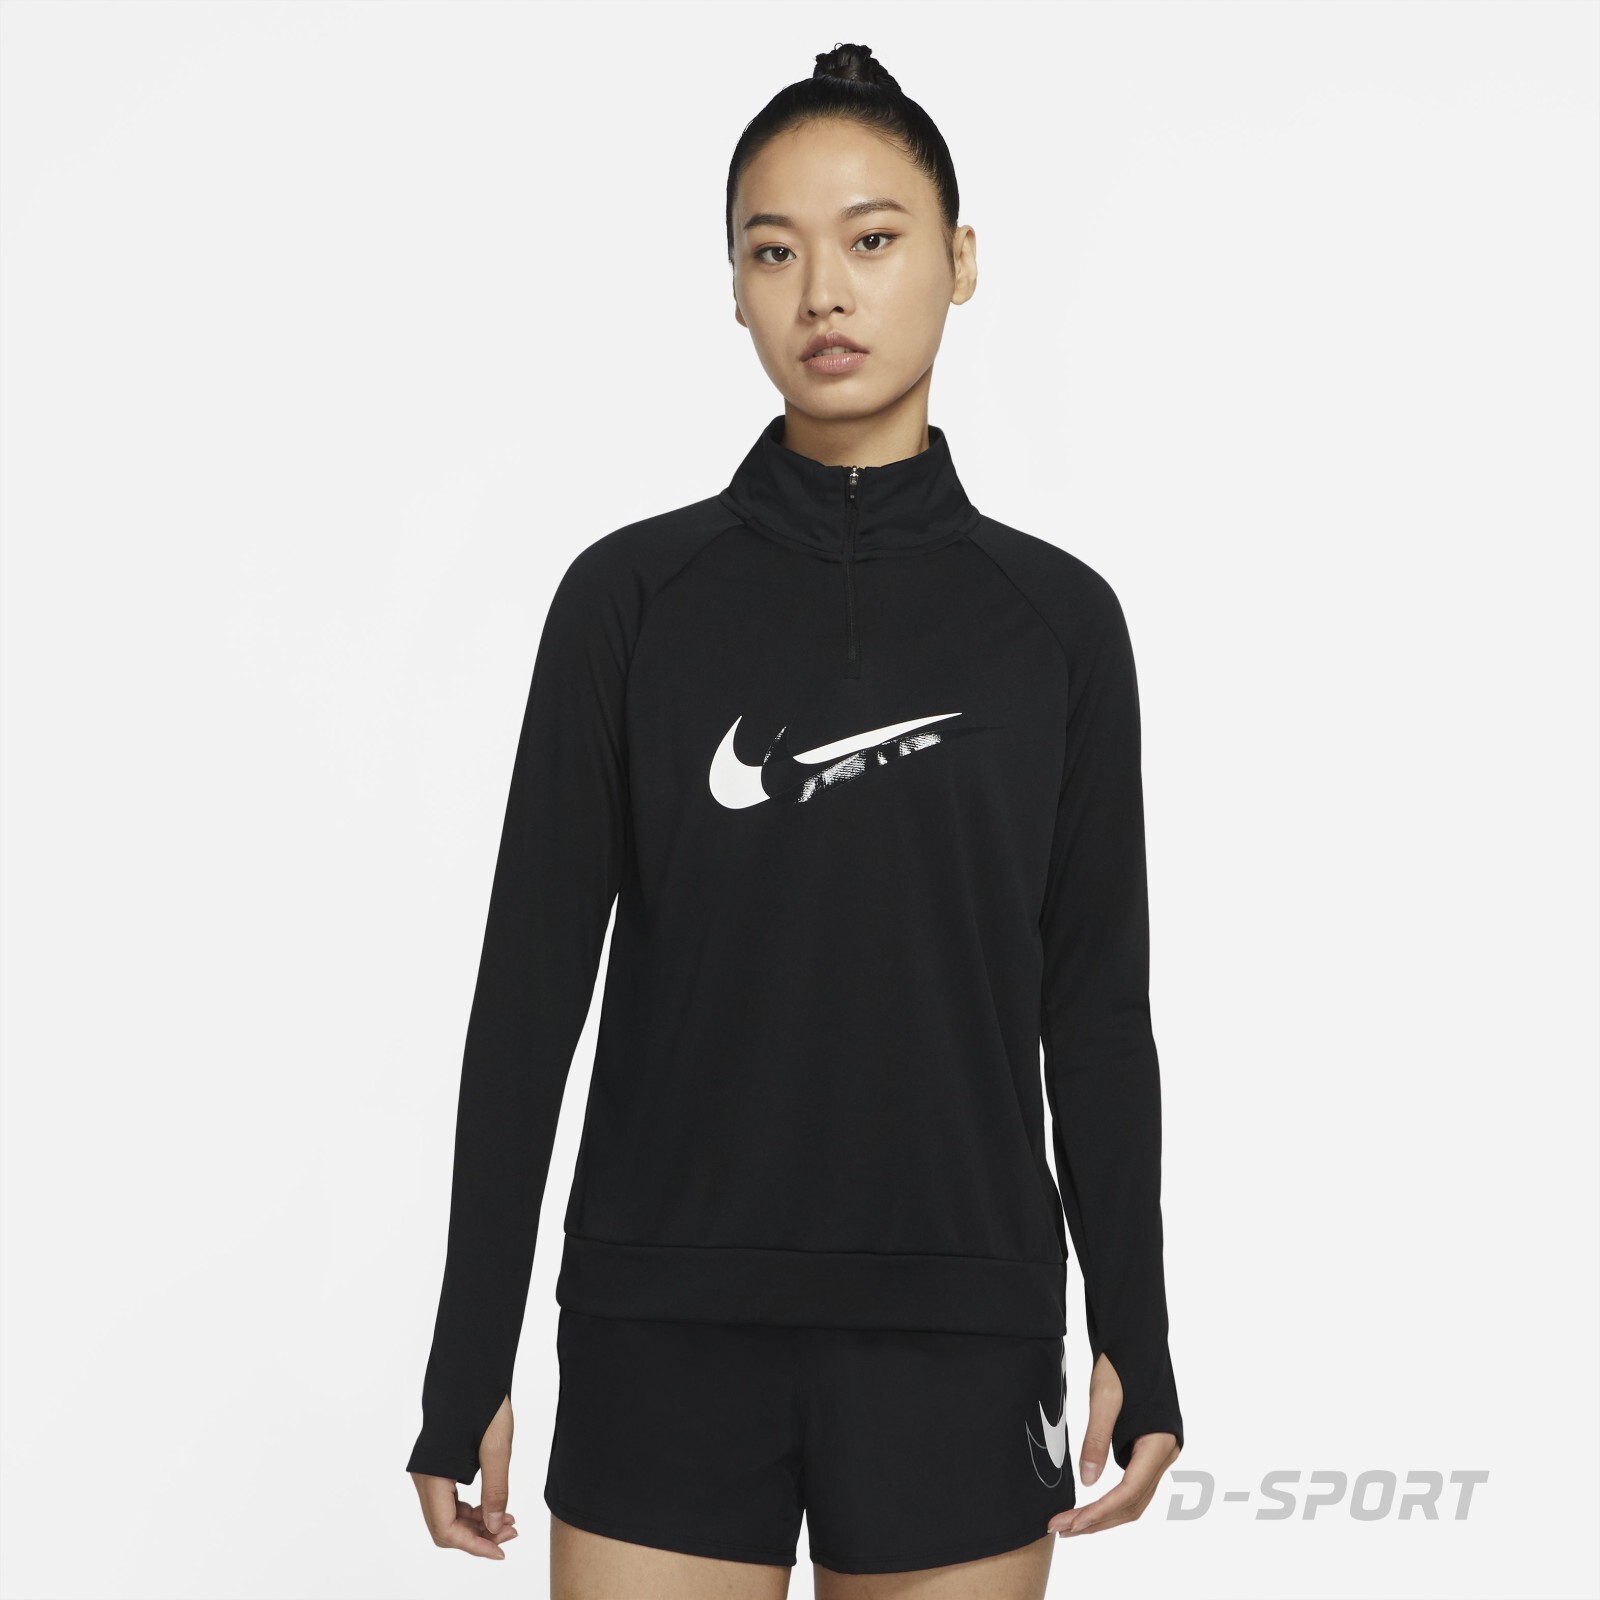 Nike Dri-FIT Swoosh Run